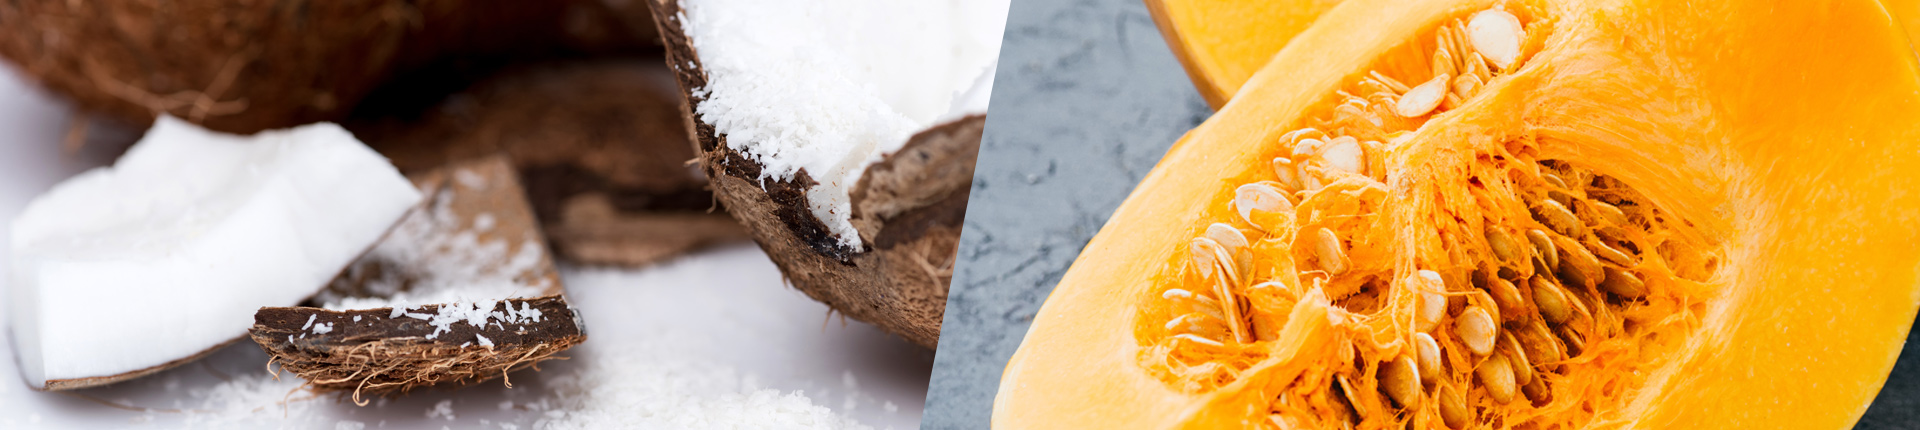 Wiórki kokosowe vs. pestki z dyni - porównanie okiem dietetyka